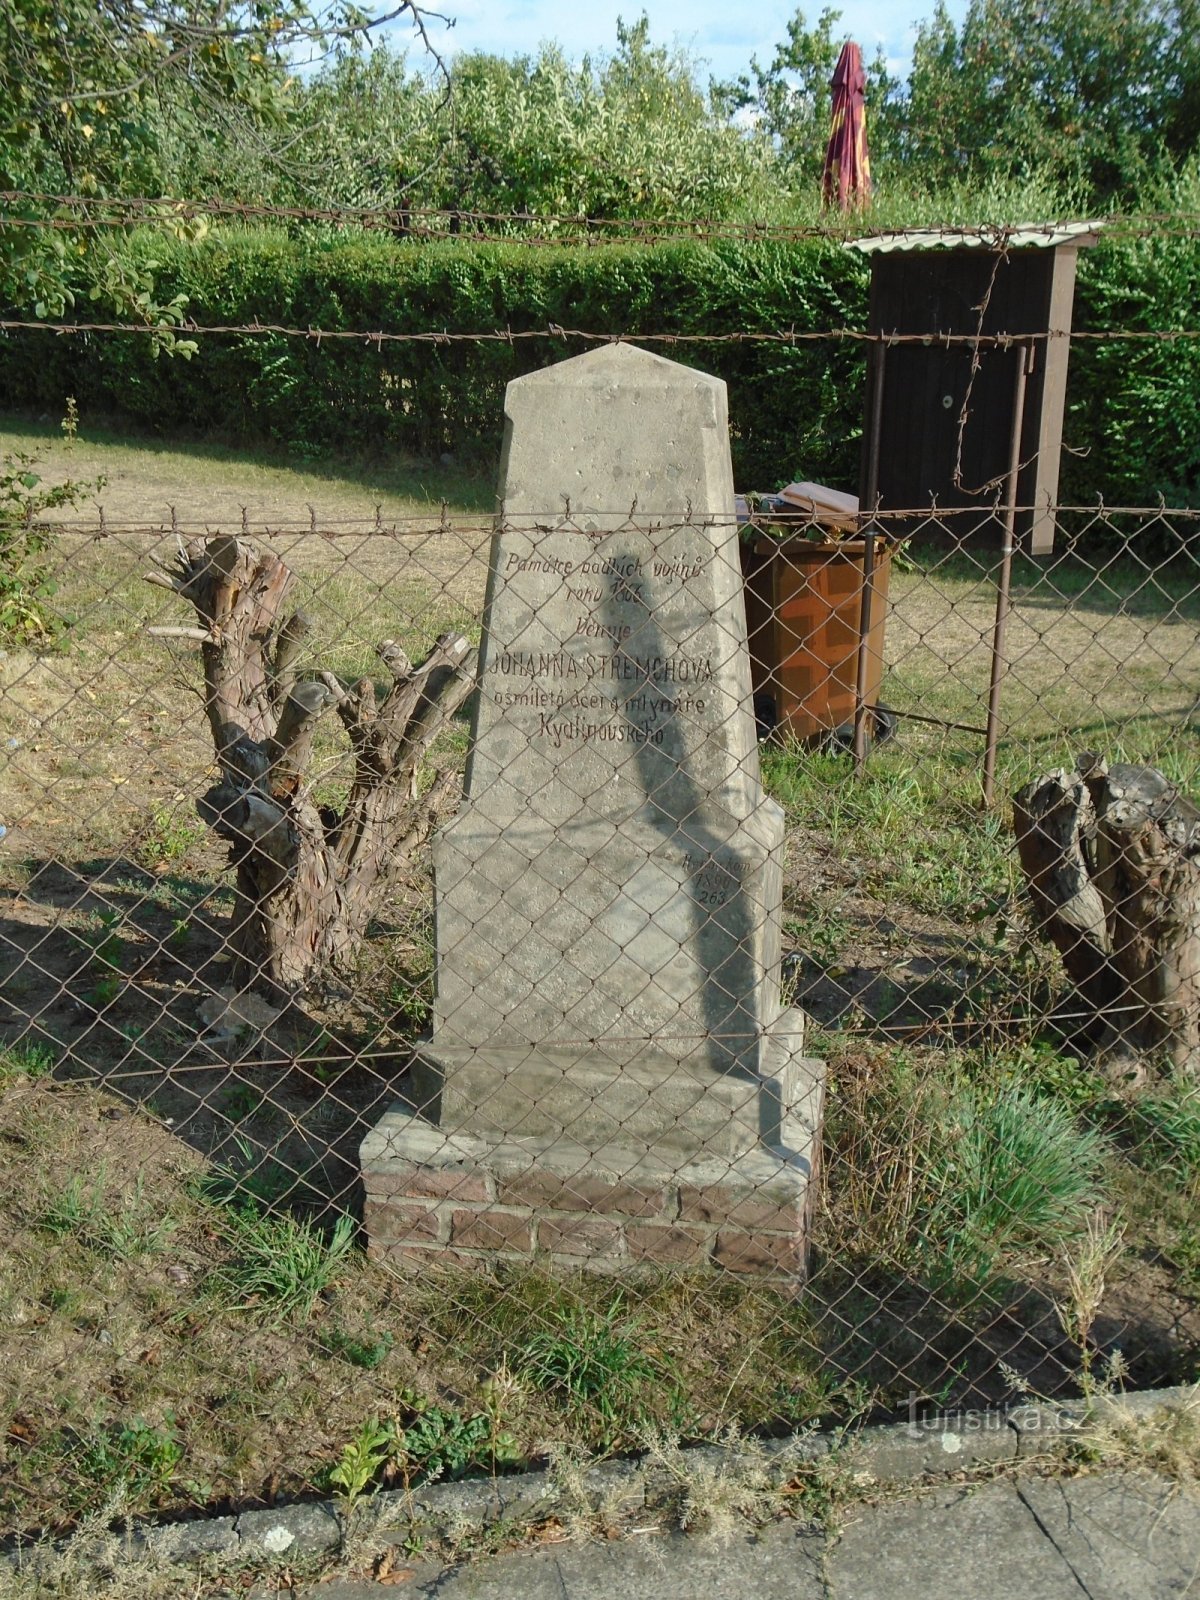 Monumento ai caduti nella guerra prussiano-austriaca del 1866 a Plácky (Hradec Králové)